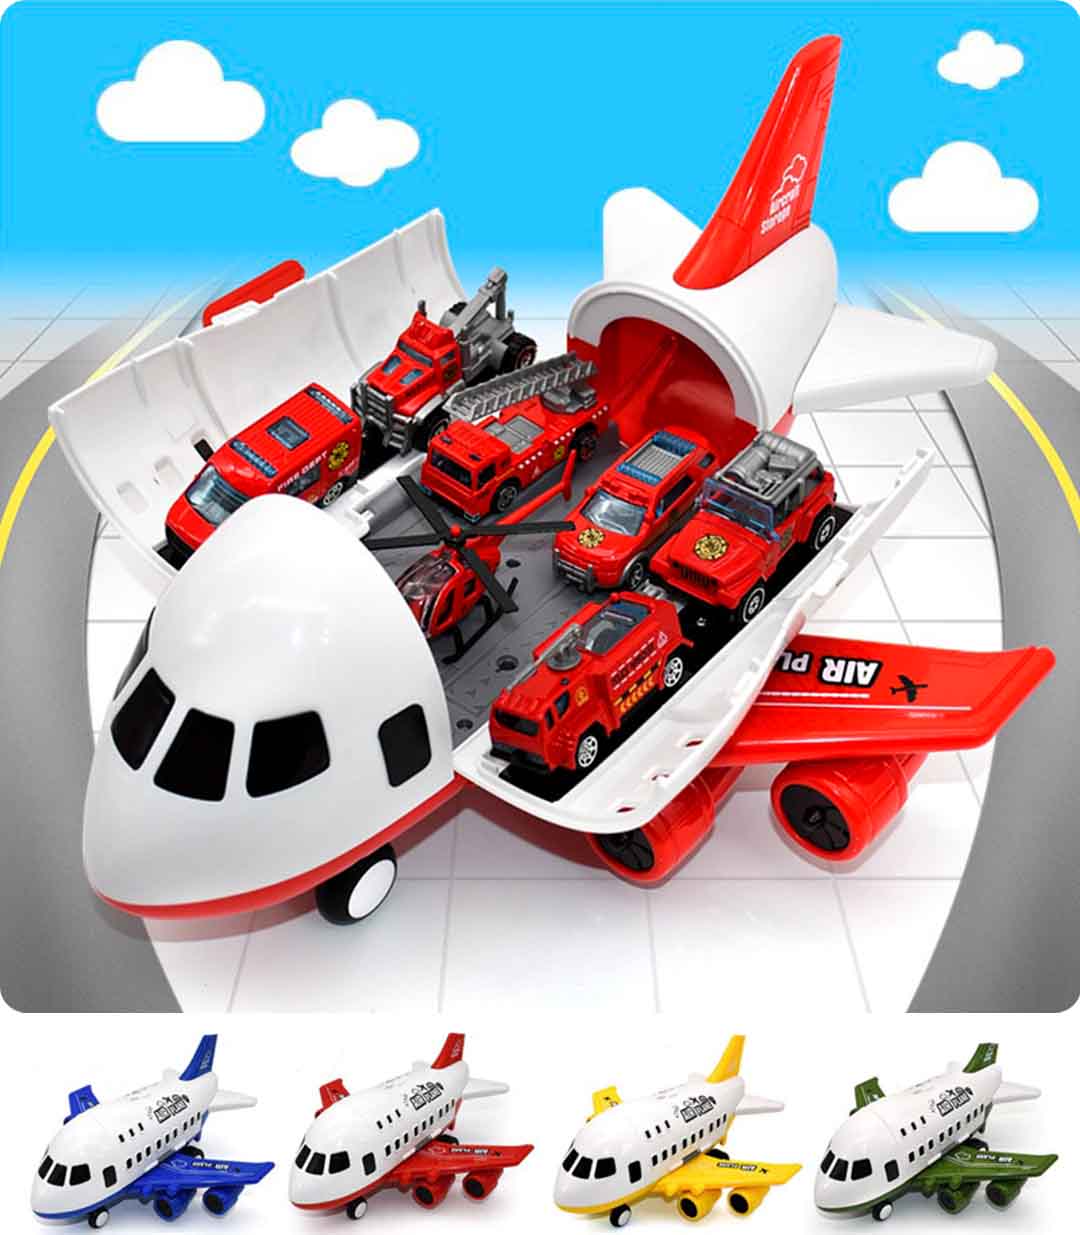 Mockup do Jumbo® Avião de Brinquedo c/ 6 Super Carrinhos Disponível em: www.descontara.com